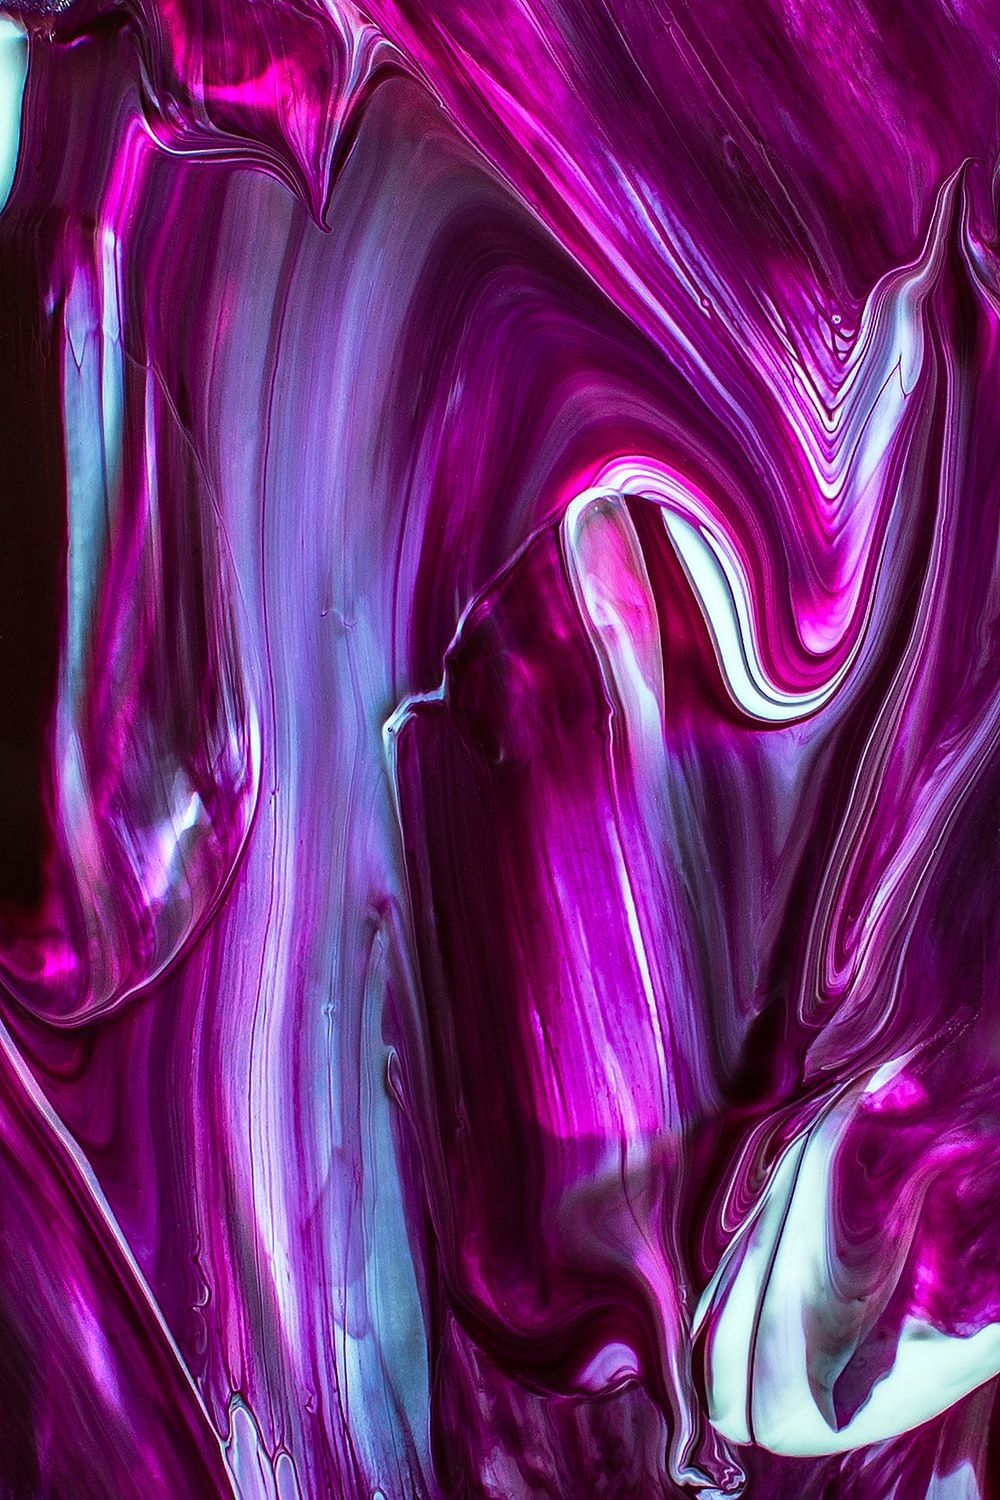 Imágenes púrpuras [HD] | Descargar imágenes gratis